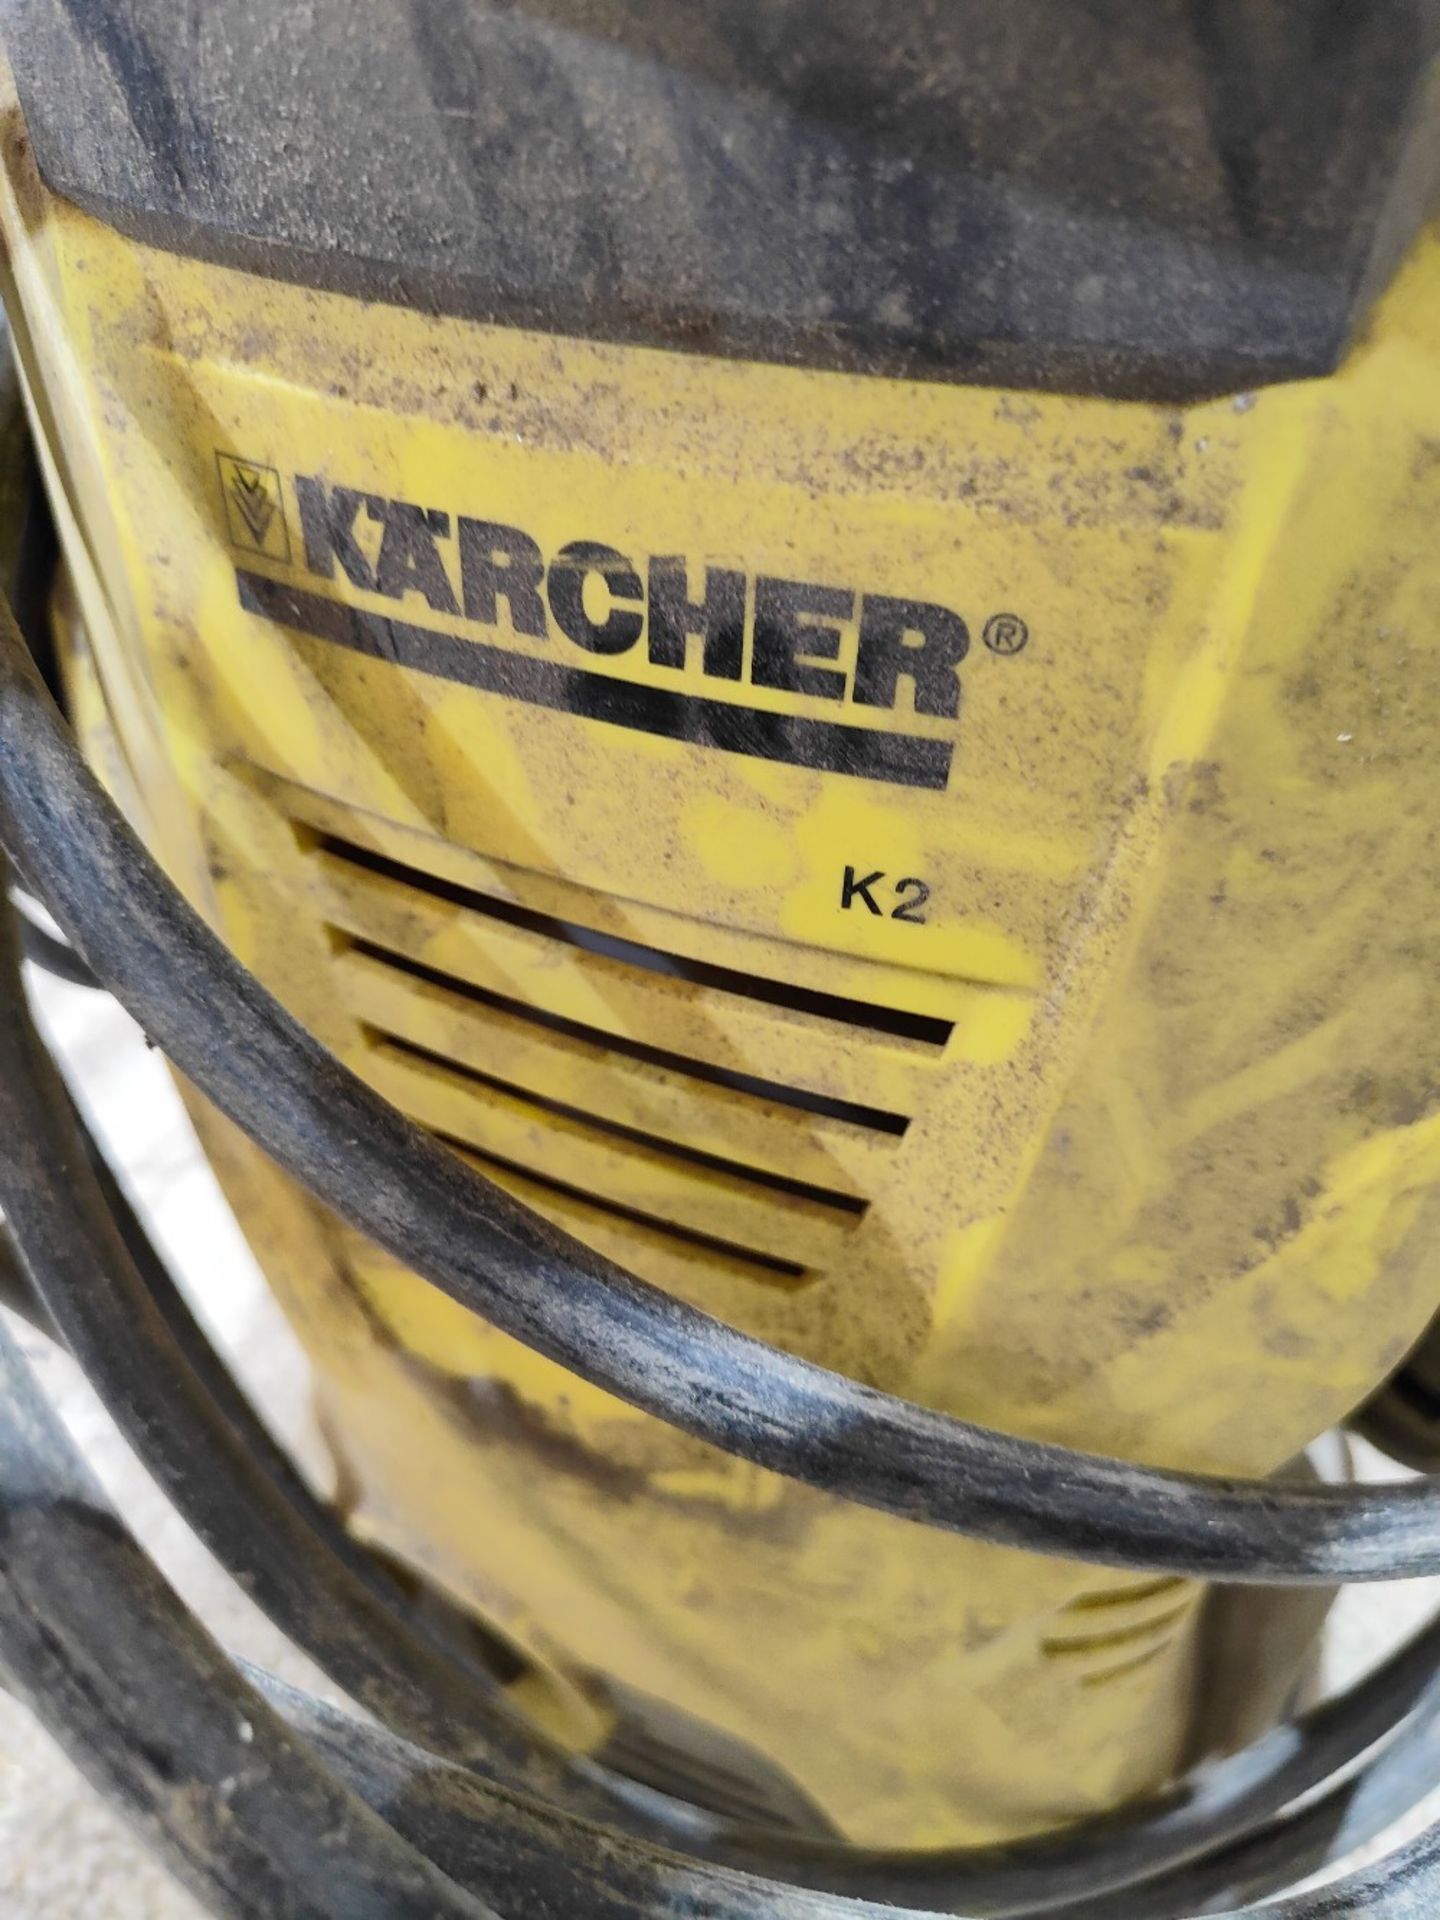 Karcher K2 pressure washer - Image 3 of 3